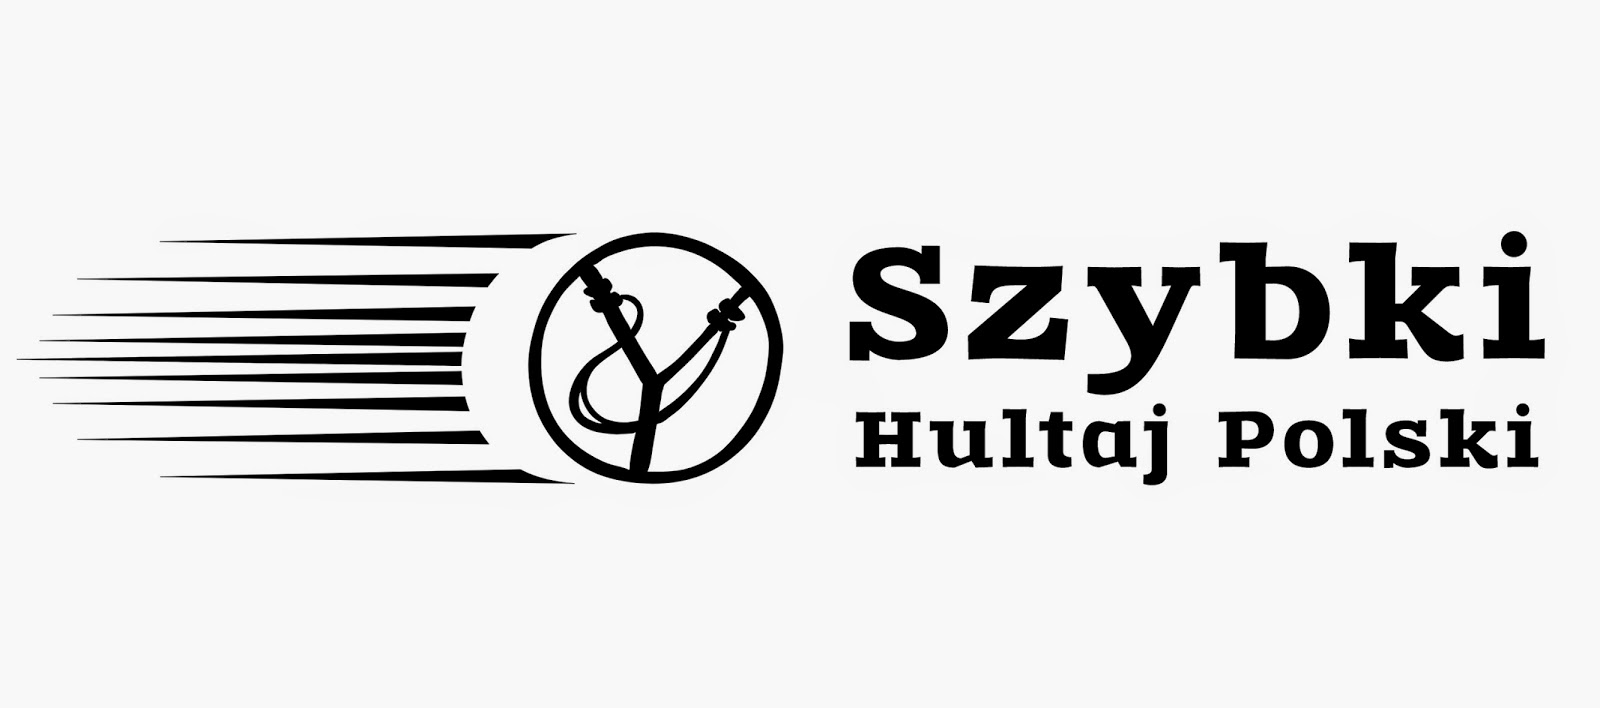 http://sklep.hultajpolski.pl/pl/c/Szybki-Hultaj/84